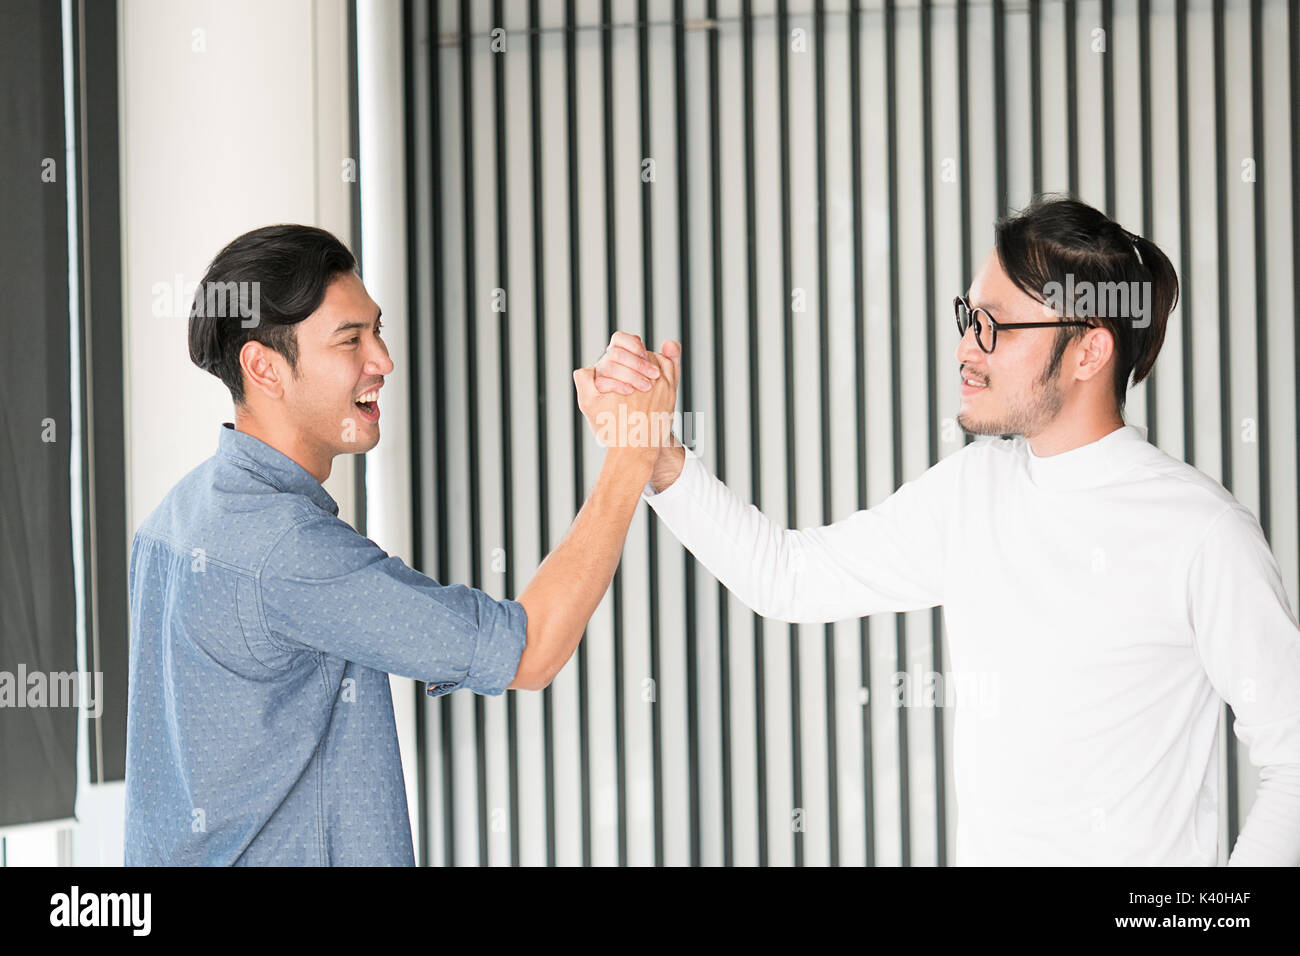 Portrait eines glücklichen jungen Mann im Amt klatschen ihre Hände ok Geste asiatischer smart aussehenden Leute Stockfoto